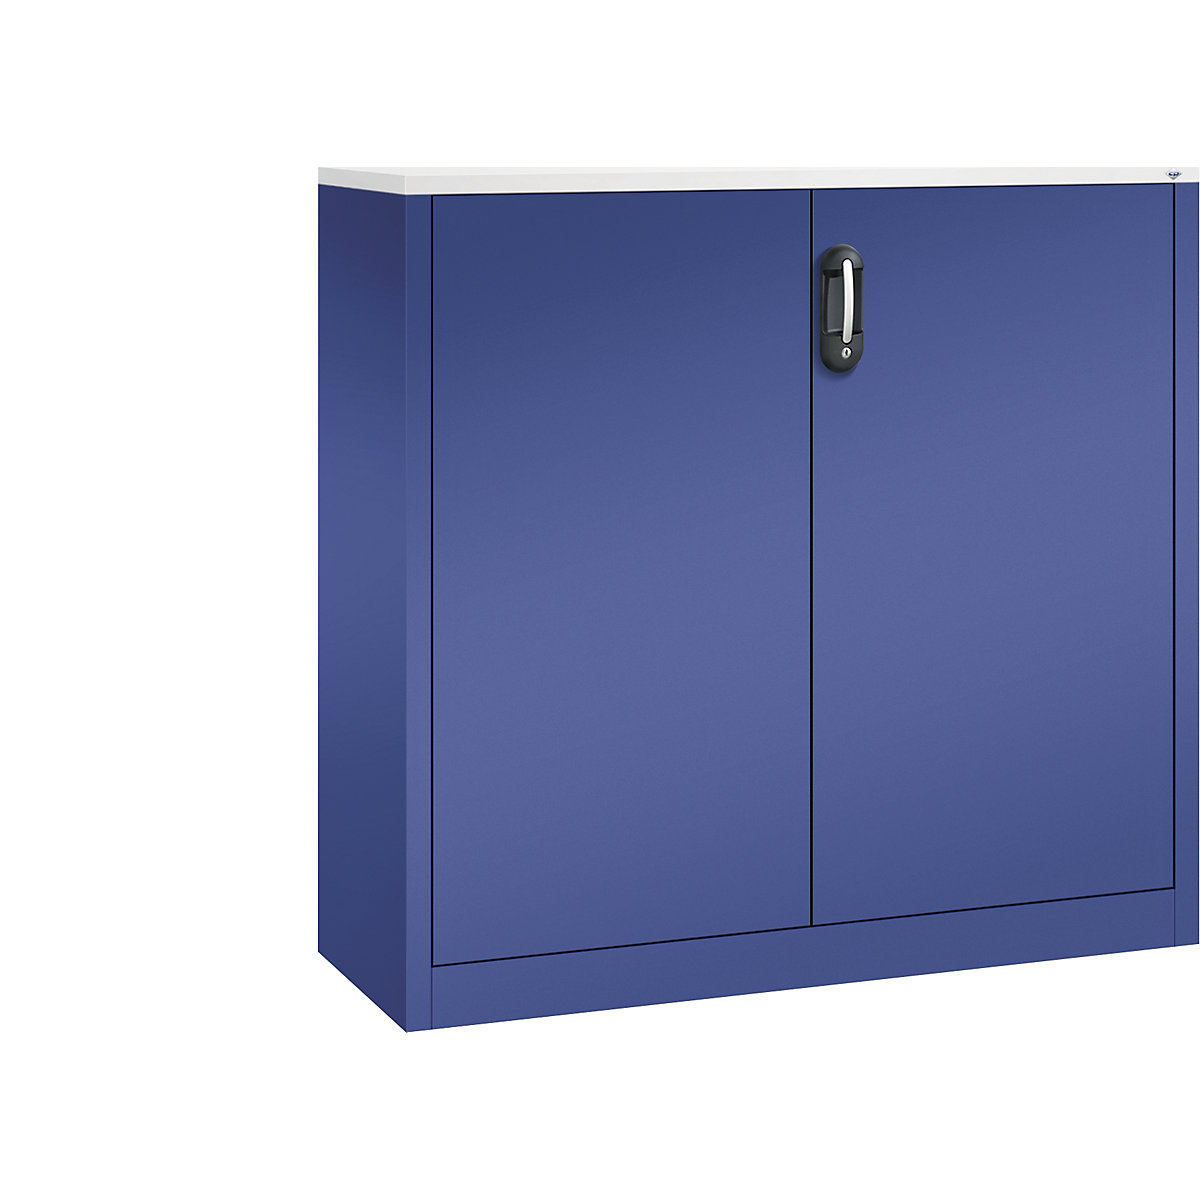 Niska komoda za dokumente ACURADO – C+P, 3 visine za registratore, VxŠxD 1200 x 1200 x 400 mm, u tamno plavoj / tamno plavoj boji